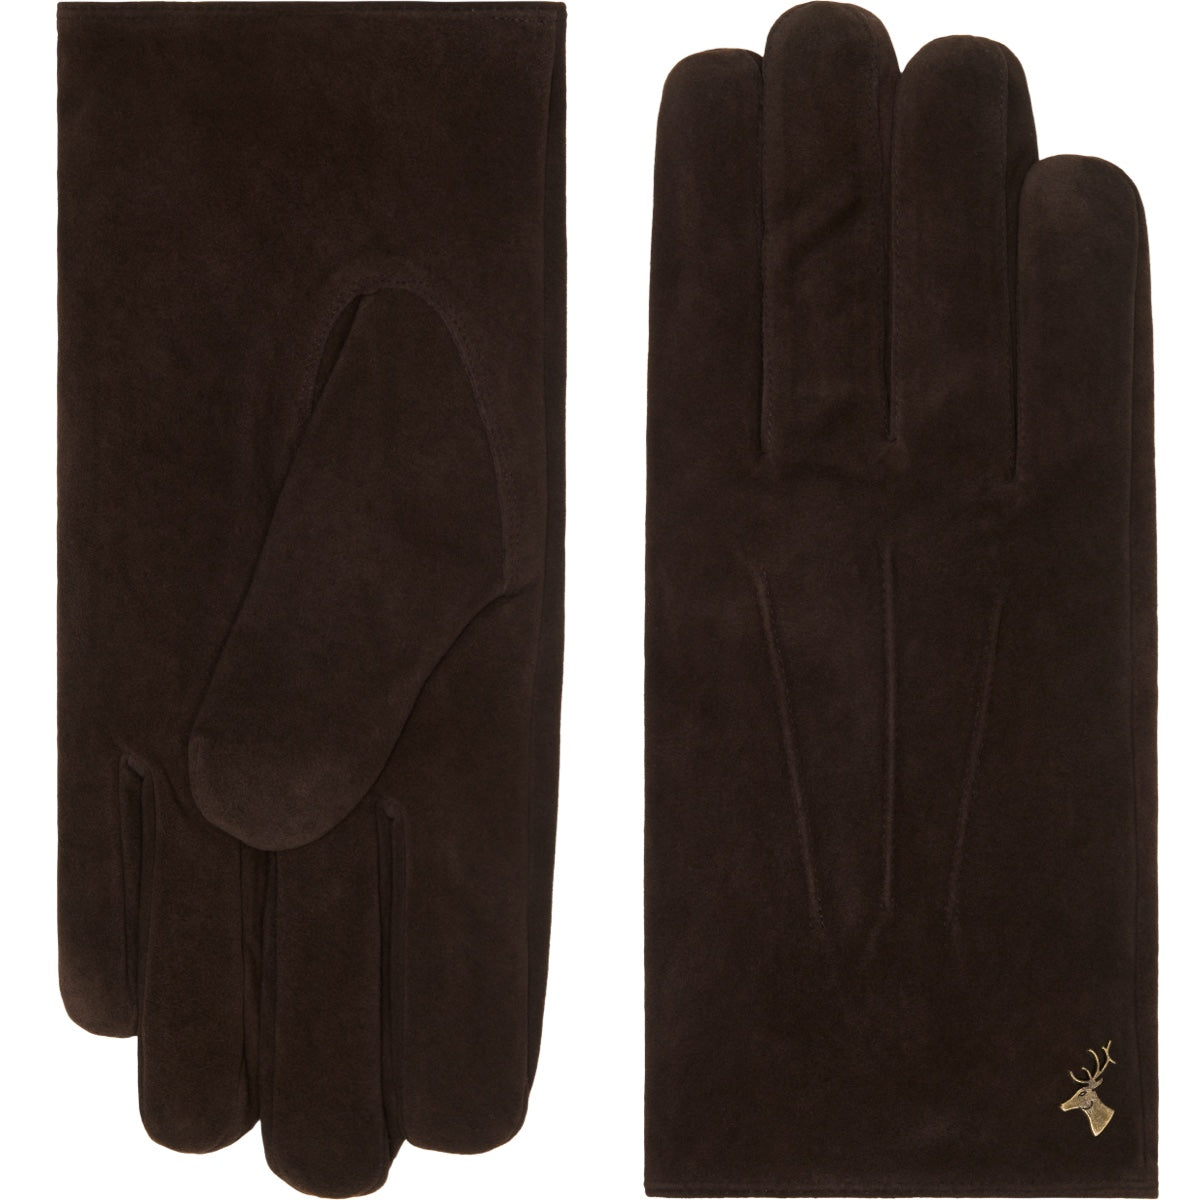 Suede Leather Gloves Brown Men Rex - Schwartz & von Halen® - Premium Leather Gloves - 2